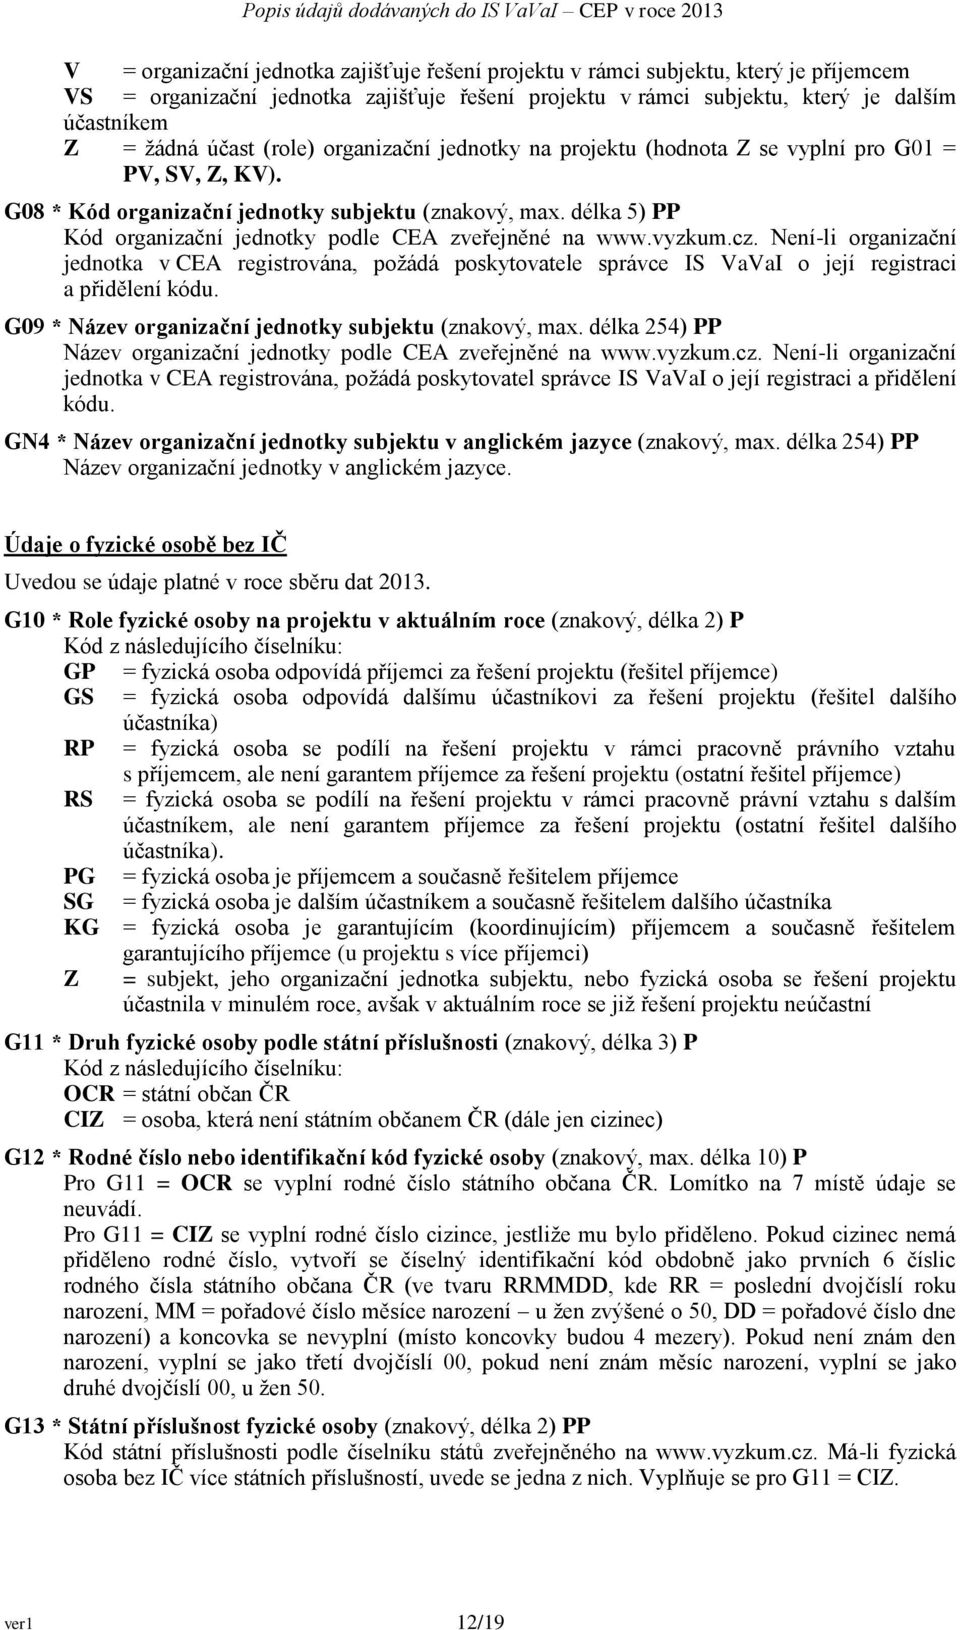 délka 5) PP Kód organizační jednotky podle CEA zveřejněné na www.vyzkum.cz. Není-li organizační jednotka v CEA registrována, požádá poskytovatele správce IS VaVaI o její registraci a přidělení kódu.